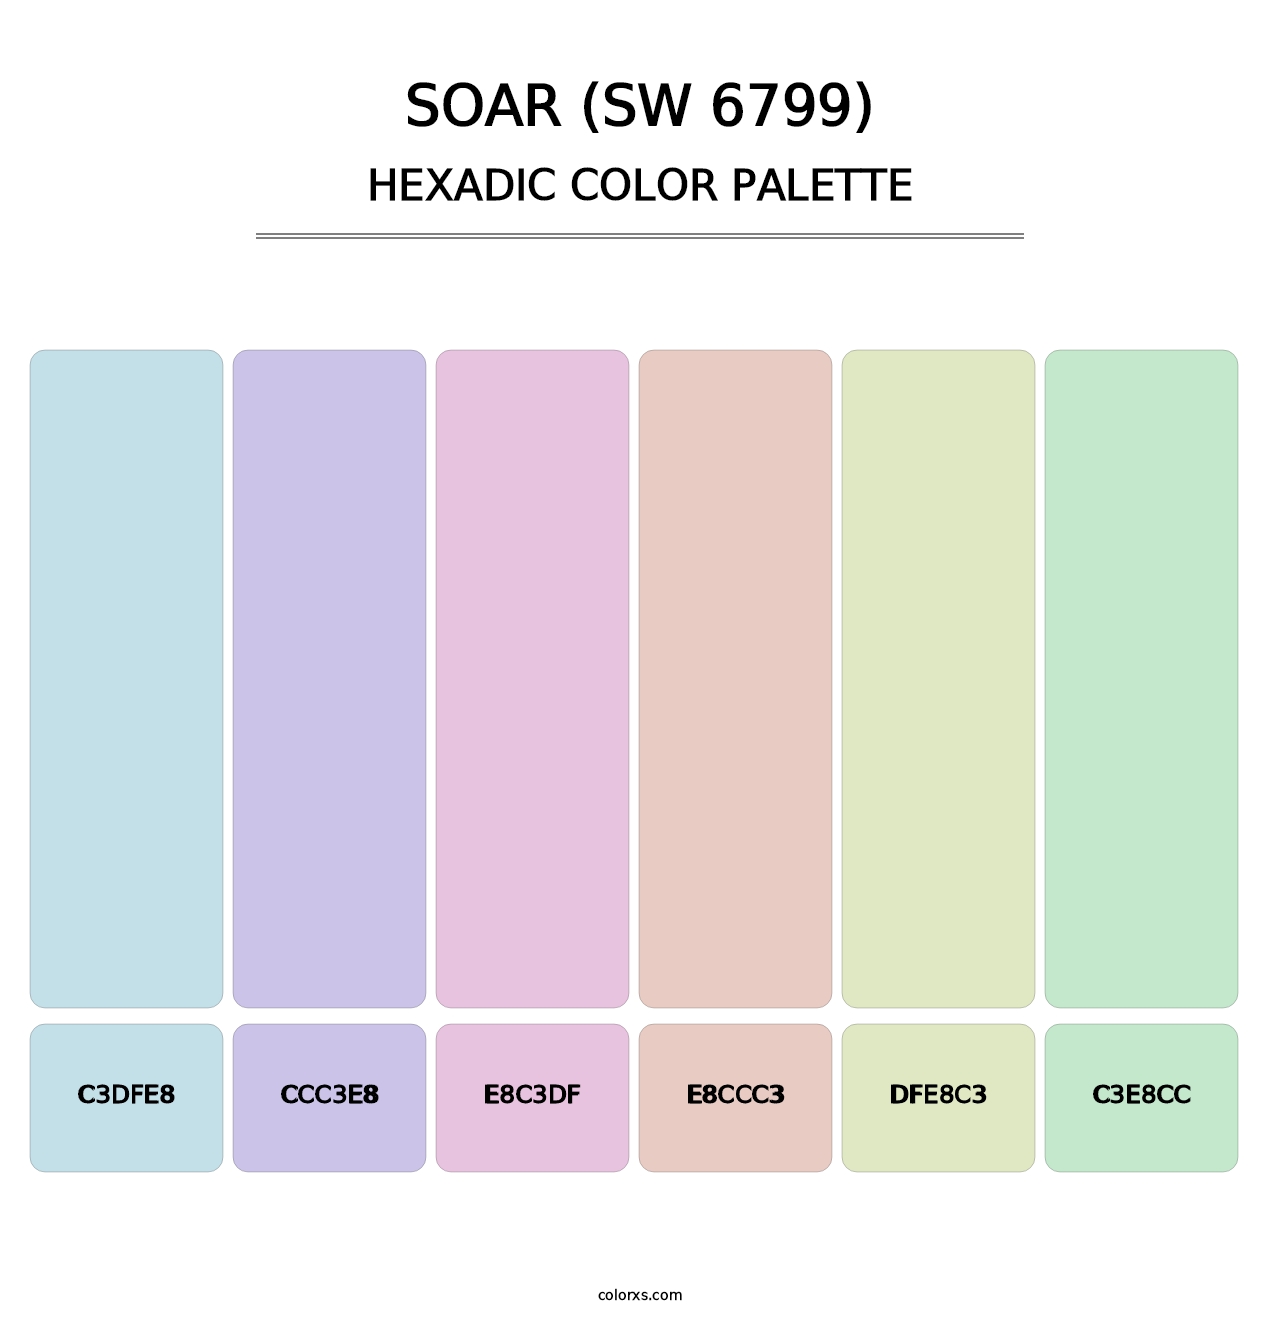 Soar (SW 6799) - Hexadic Color Palette